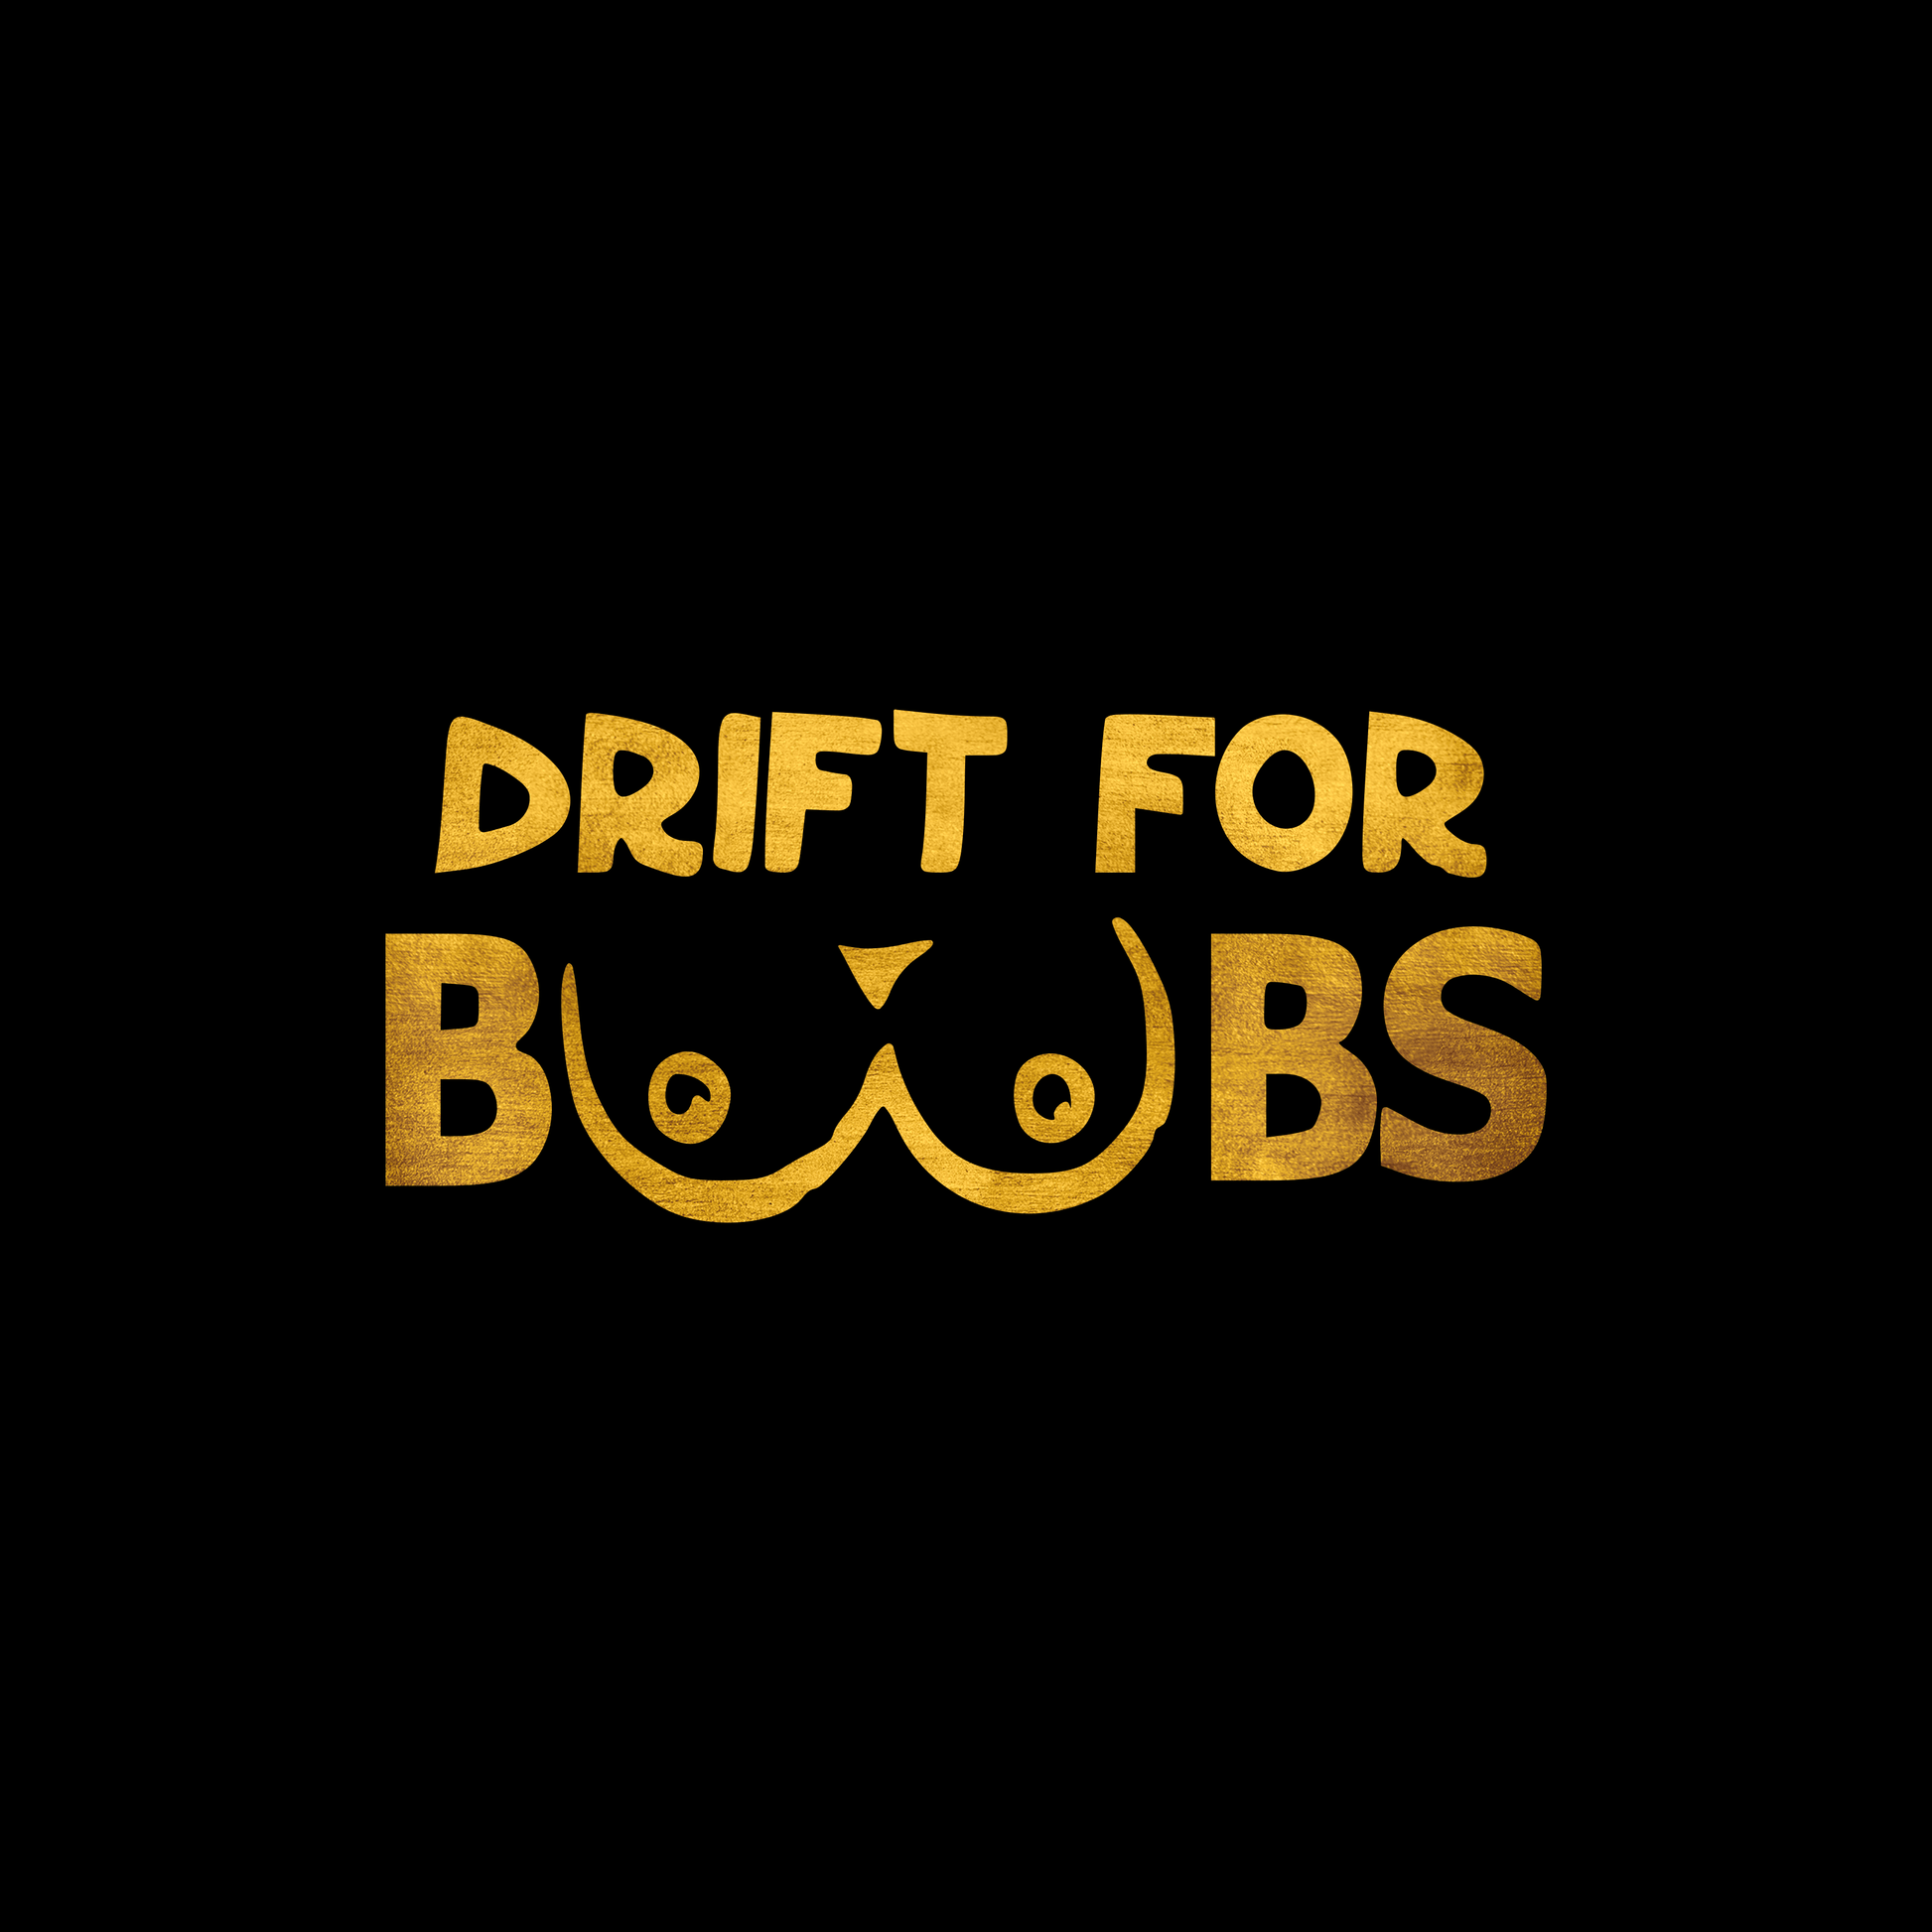 Drift for boobs sticker decal